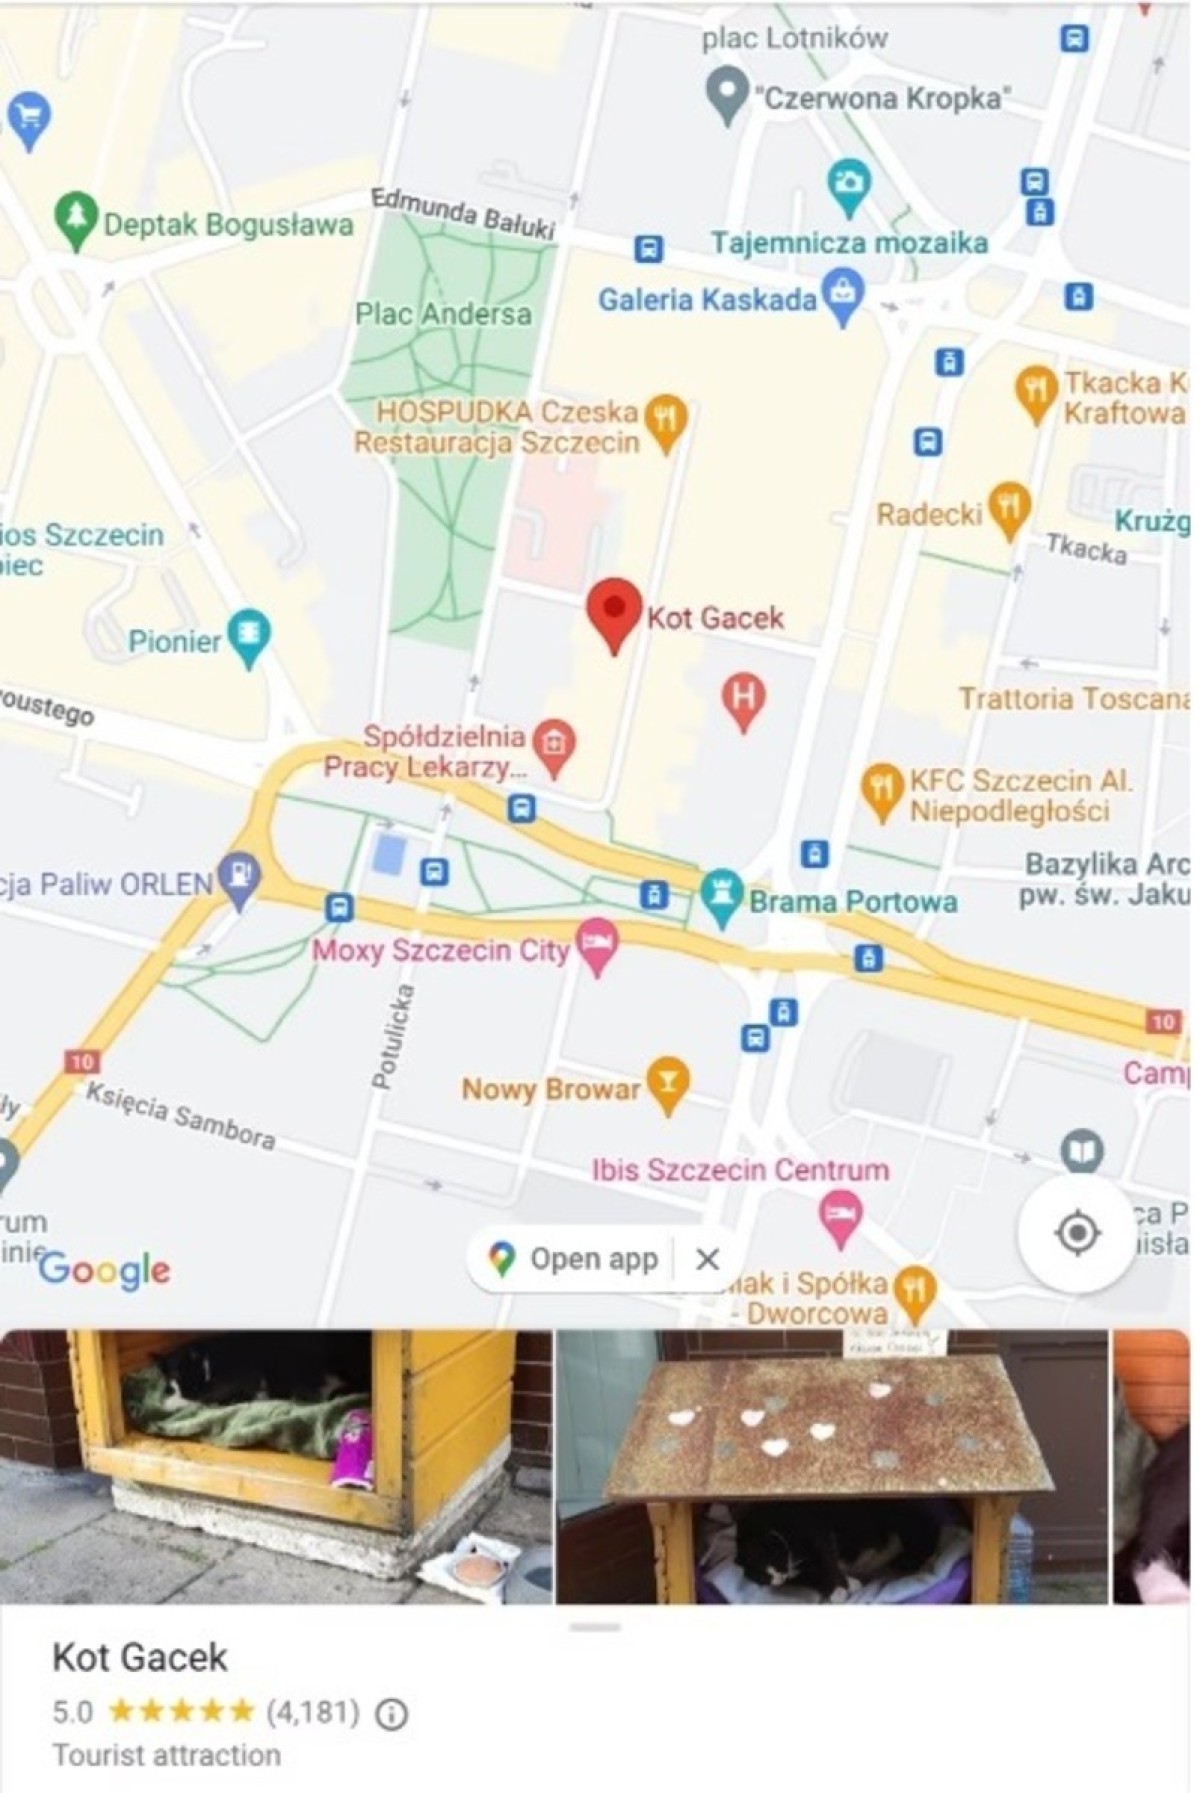 Uma captura de tela de 4 de março, quando mais de 4.000 revisores do Google Maps classificaram "Kot Gacek" com cinco estrelas. O Google retirou brevemente o gato do Google Maps e as avaliações desapareceram até que as pessoas as adicionaram novamente.